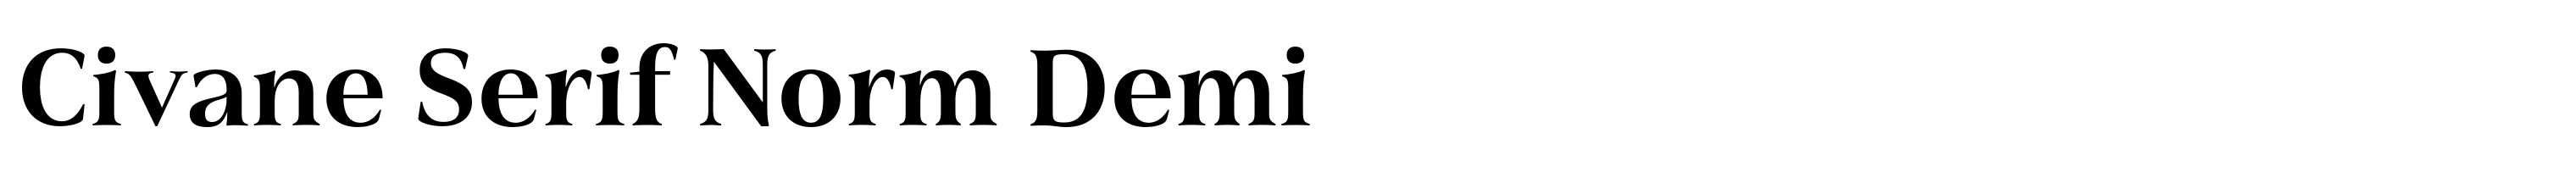 Civane Serif Norm Demi